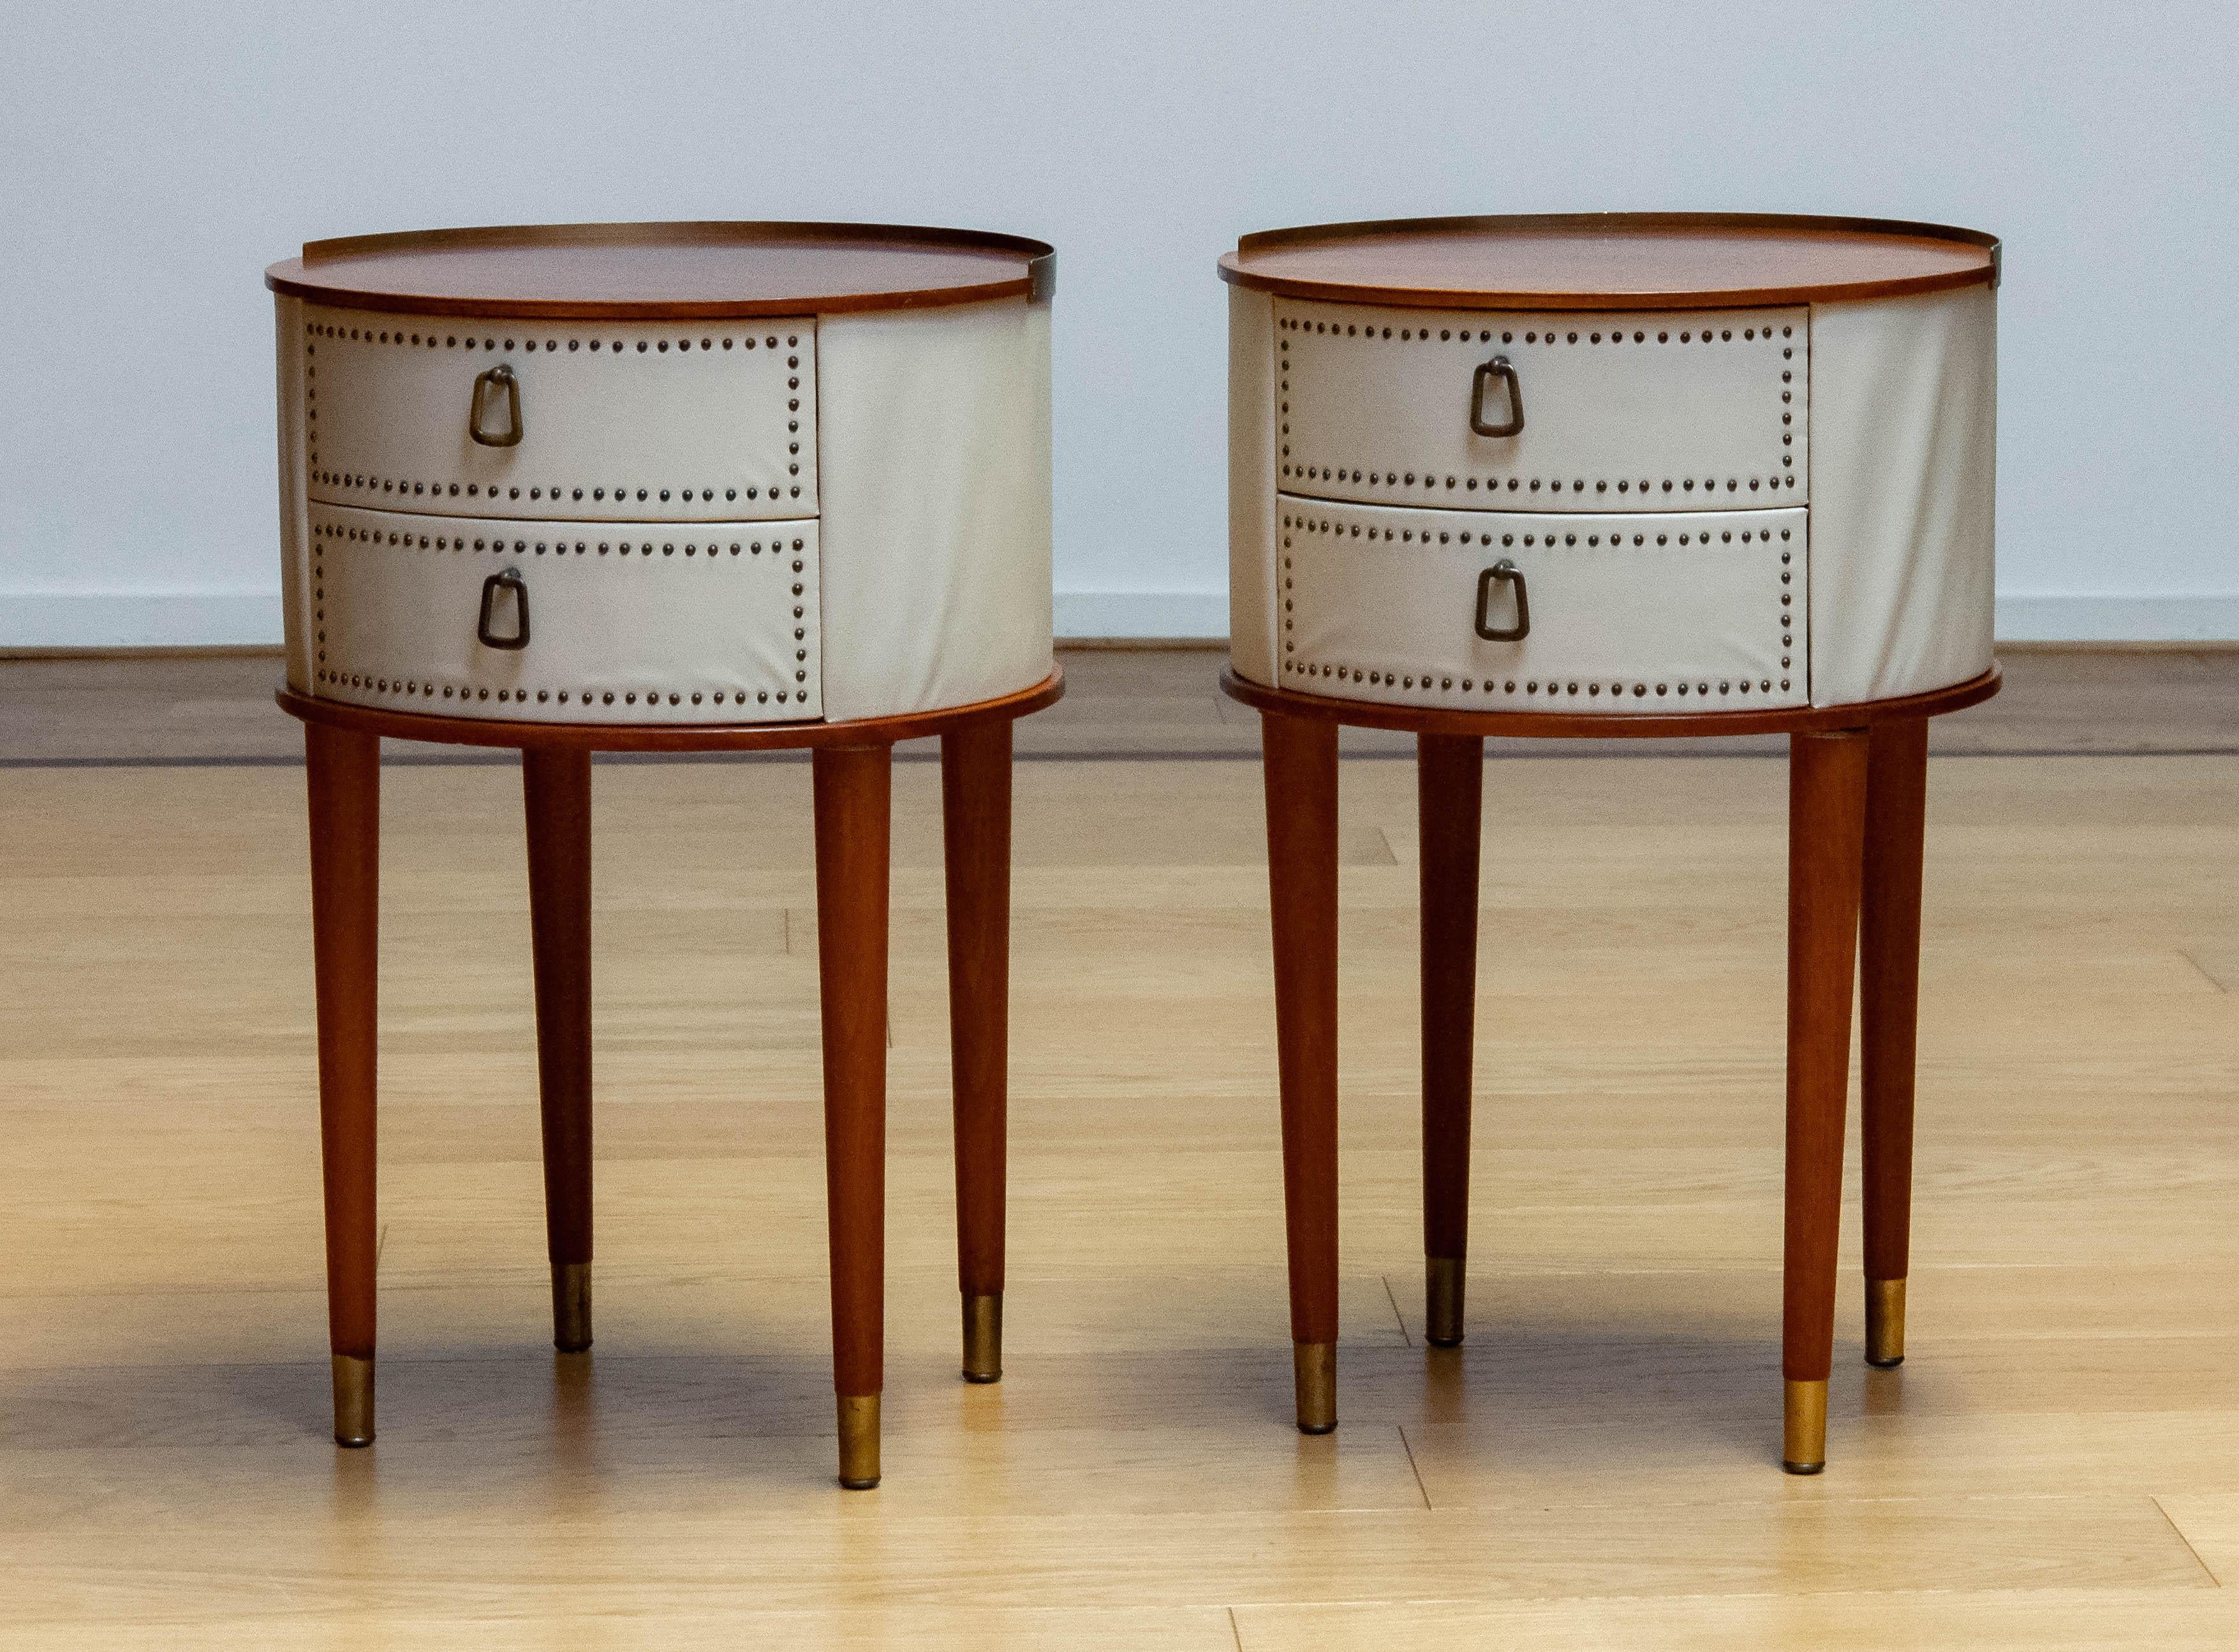 Magnifique paire de tables de nuit / chevets assortis conçue par Halvdan Pettersson pour Tibro en Suède dans les années 1950.
Les deux tables de nuit / chevets ont deux tiroirs cloués et des suspensions en laiton.
La table de nuit est en bon